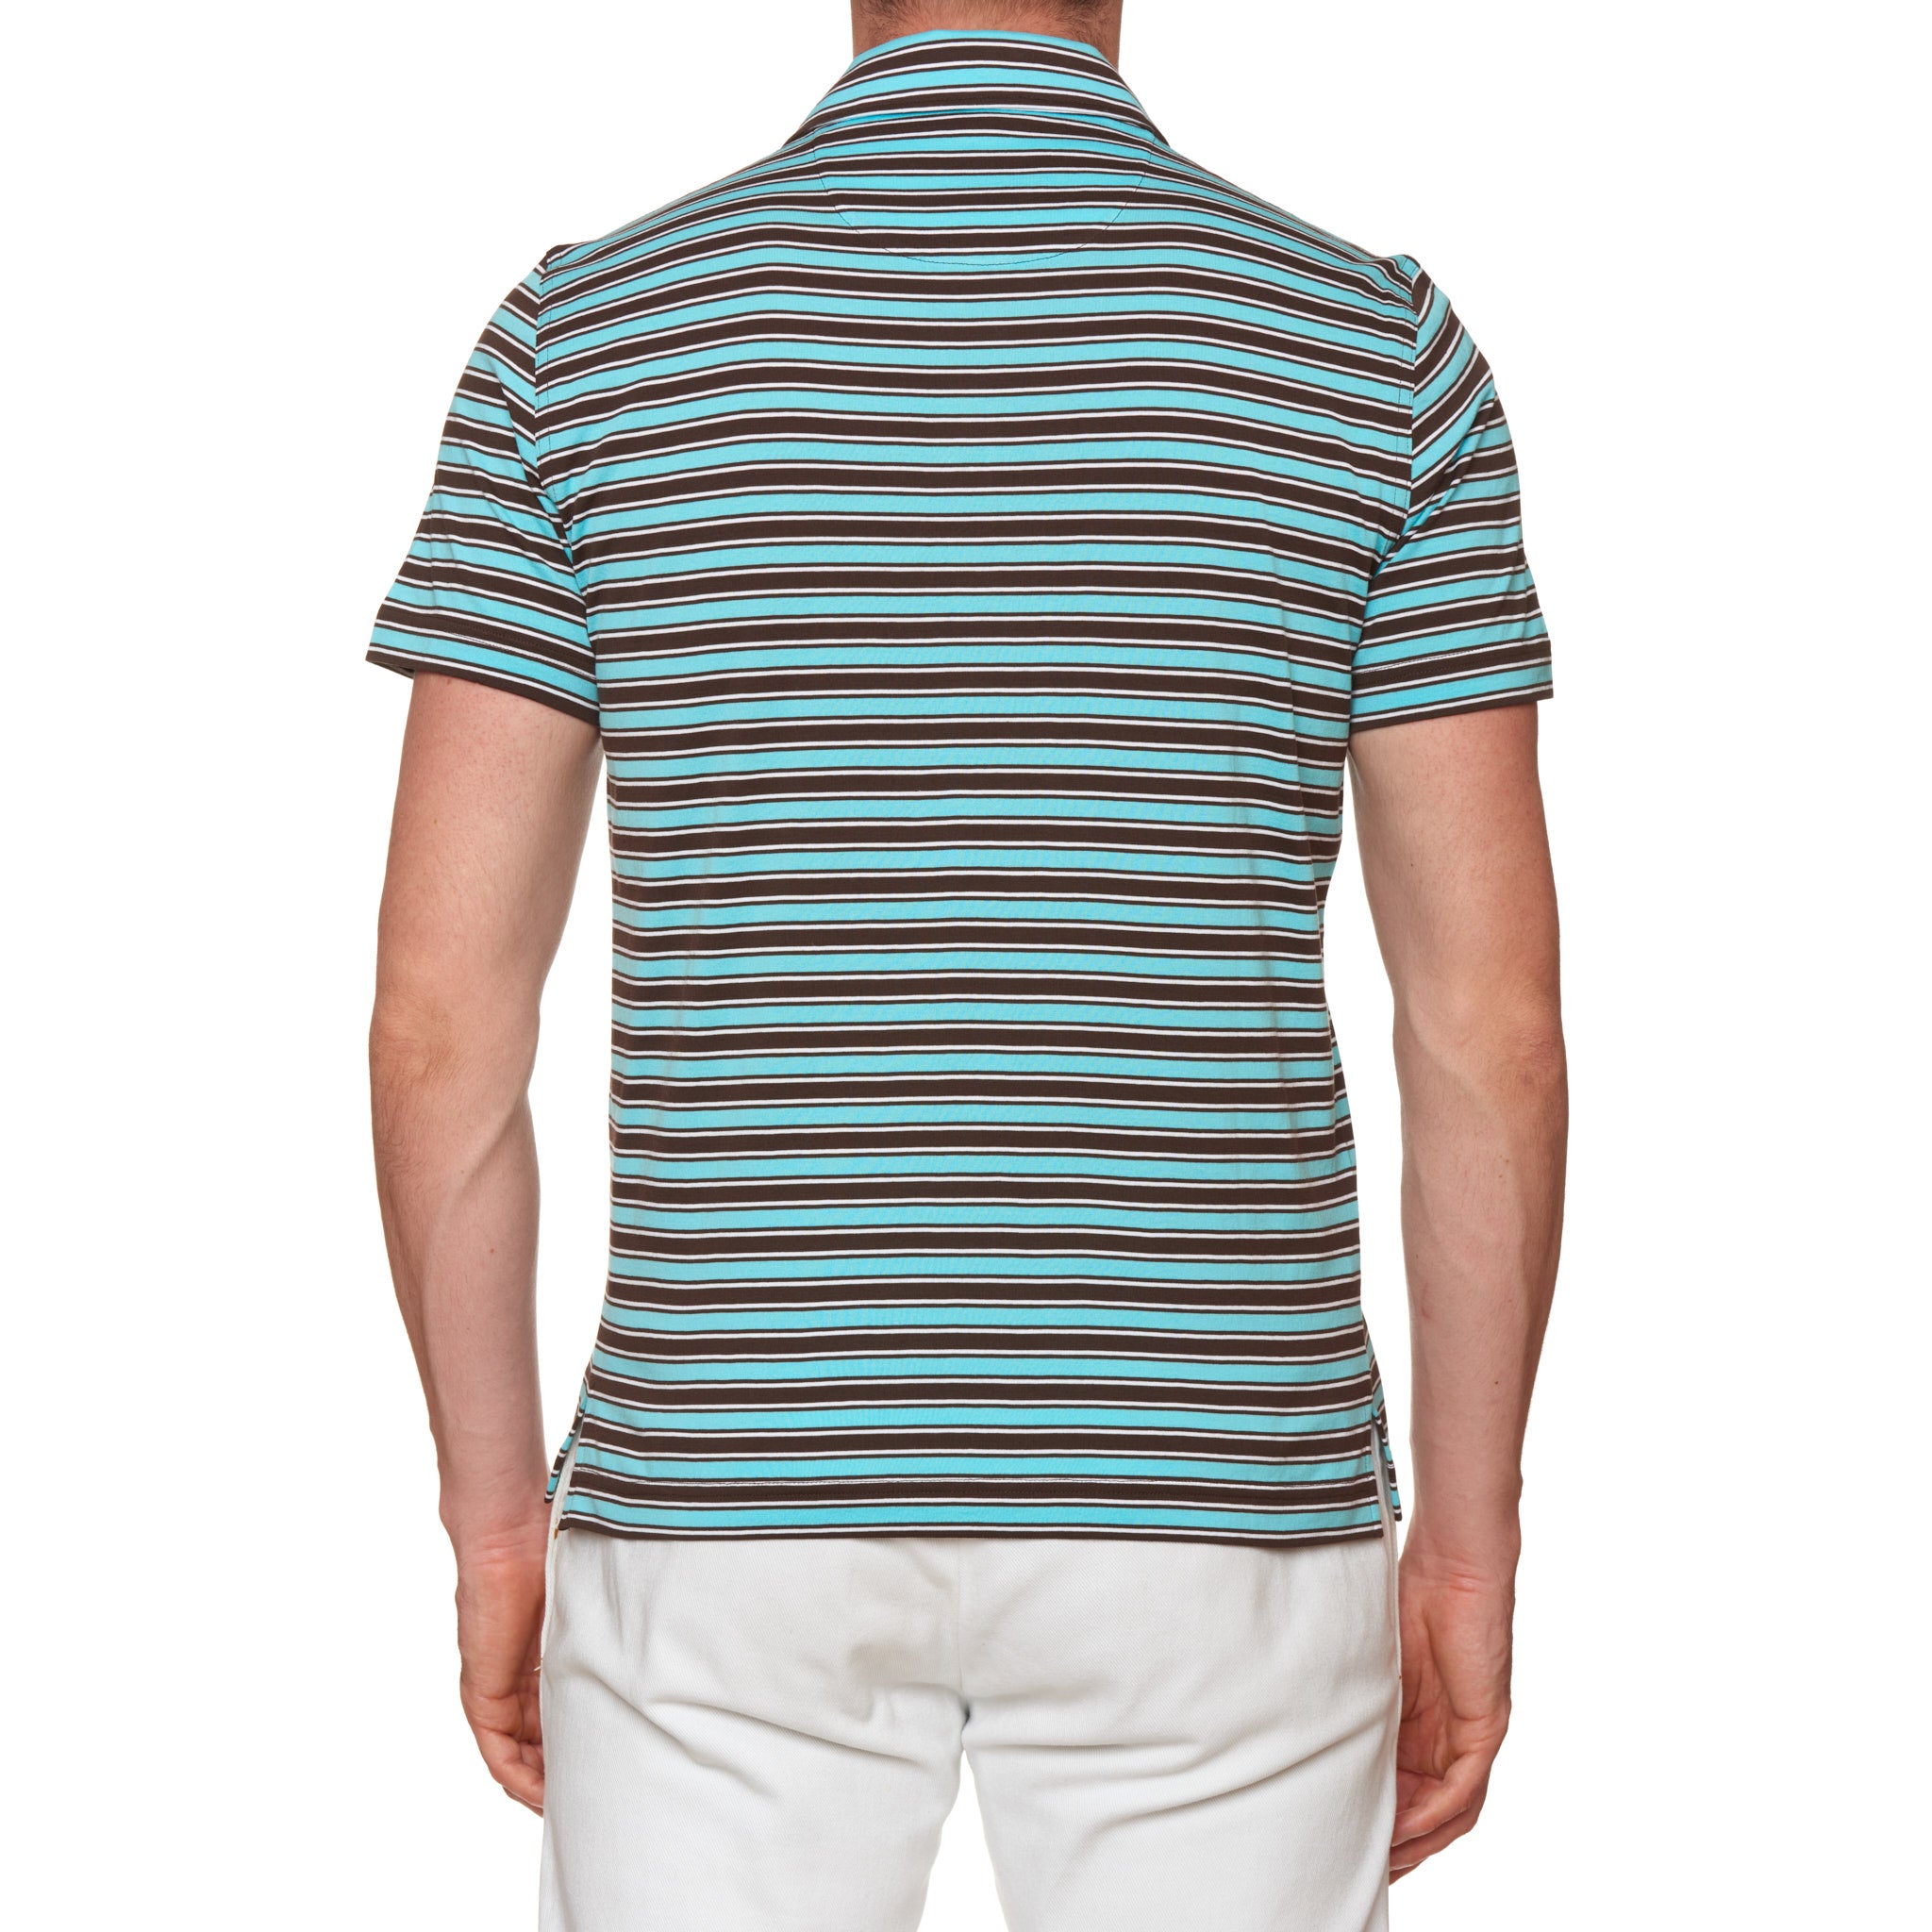 FEDELI "Florida" Multi-Color Striped Cotton Jersey Polo Shirt NEW FEDELI